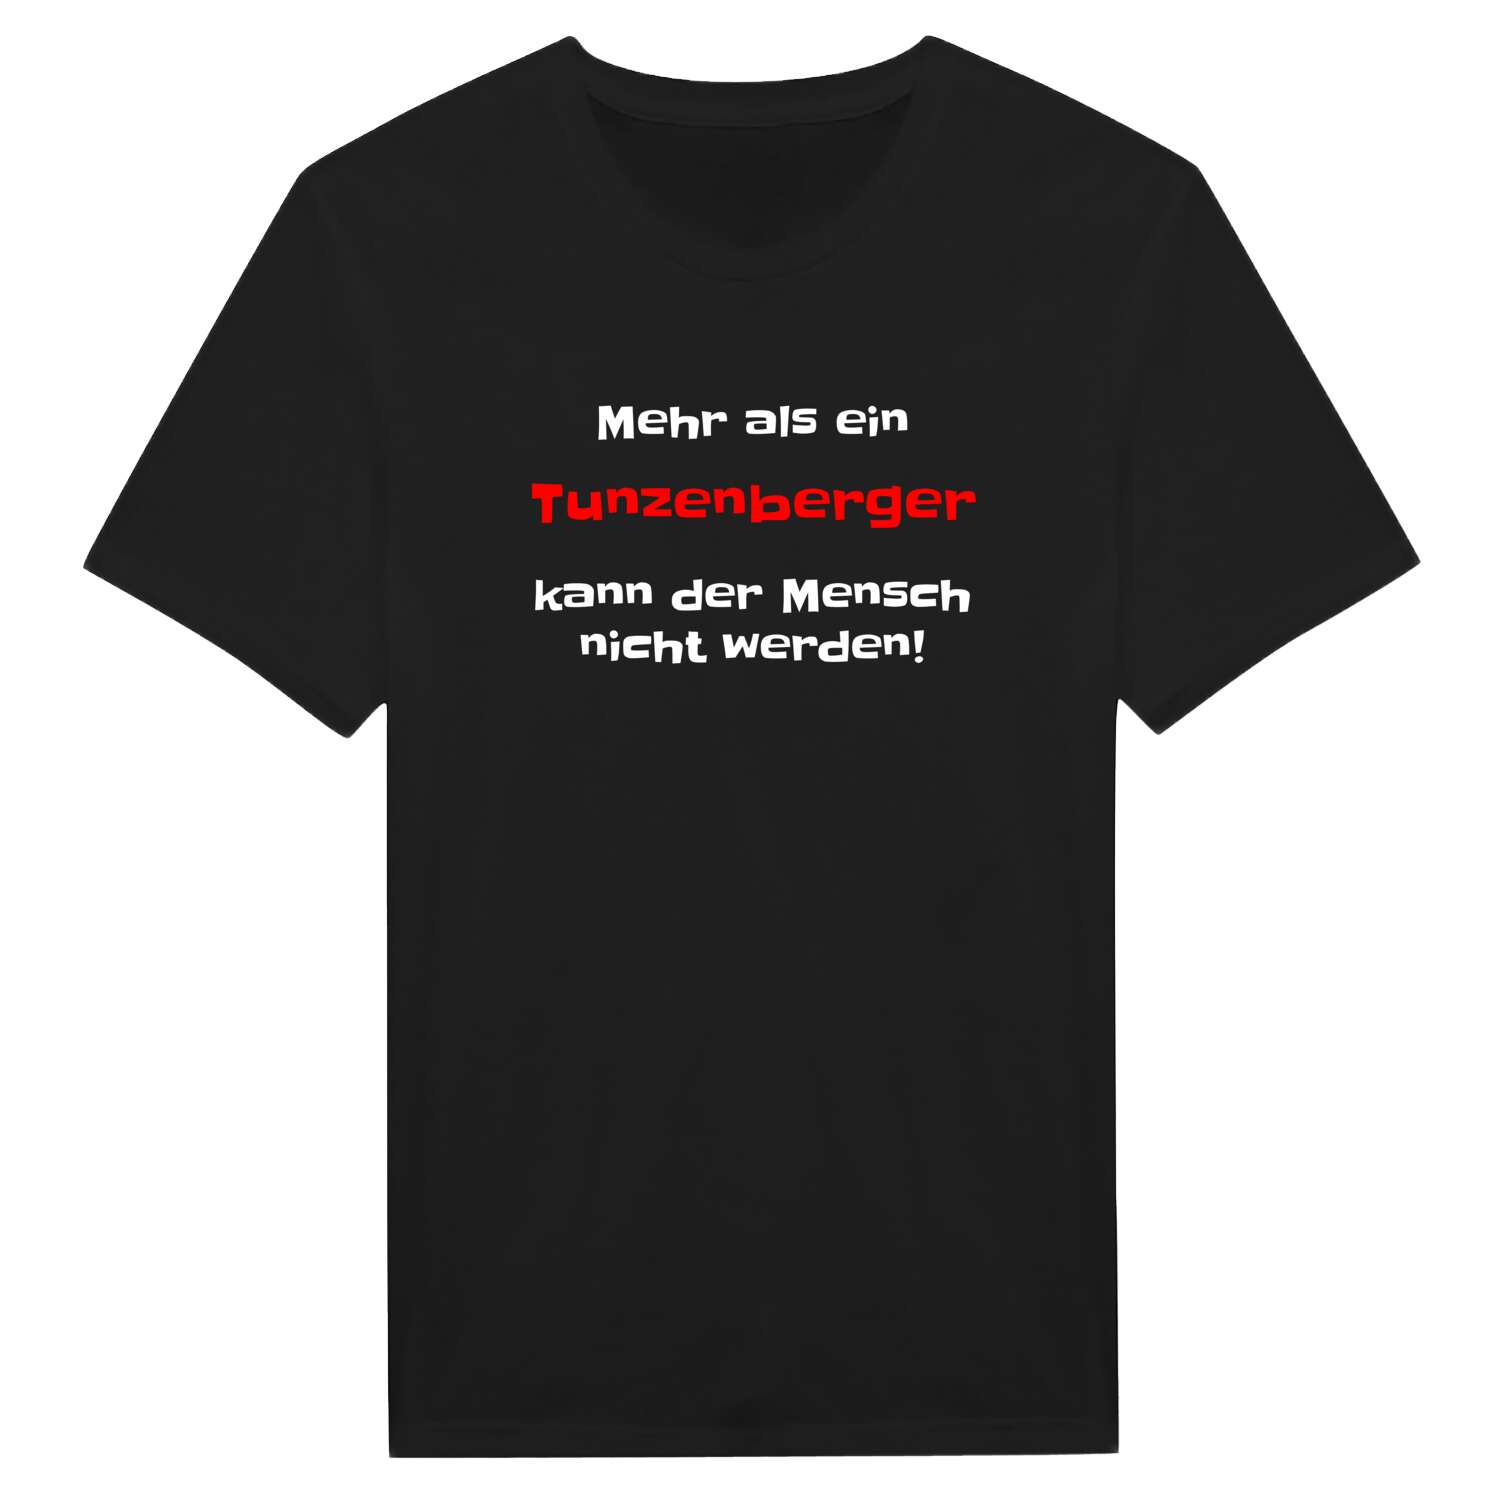 Tunzenberg T-Shirt »Mehr als ein«